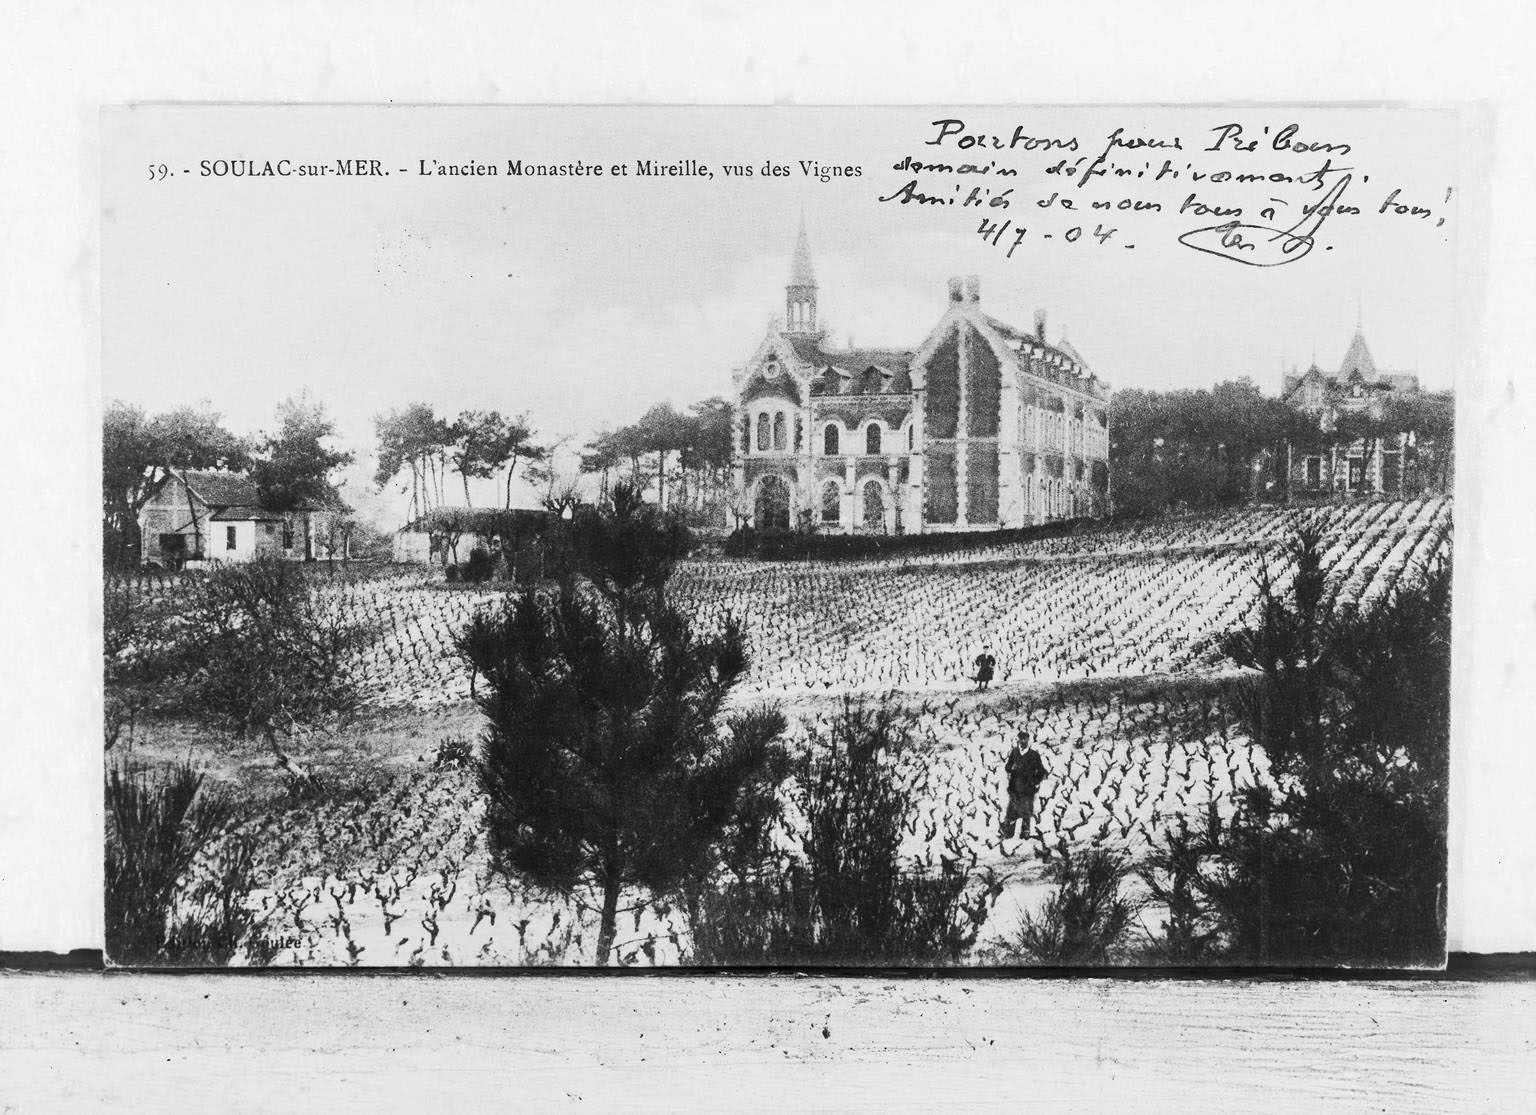 Carte postale, début 20e siècle (collection particulière) : l'ancien monastère et Mireille, vus des vignes.